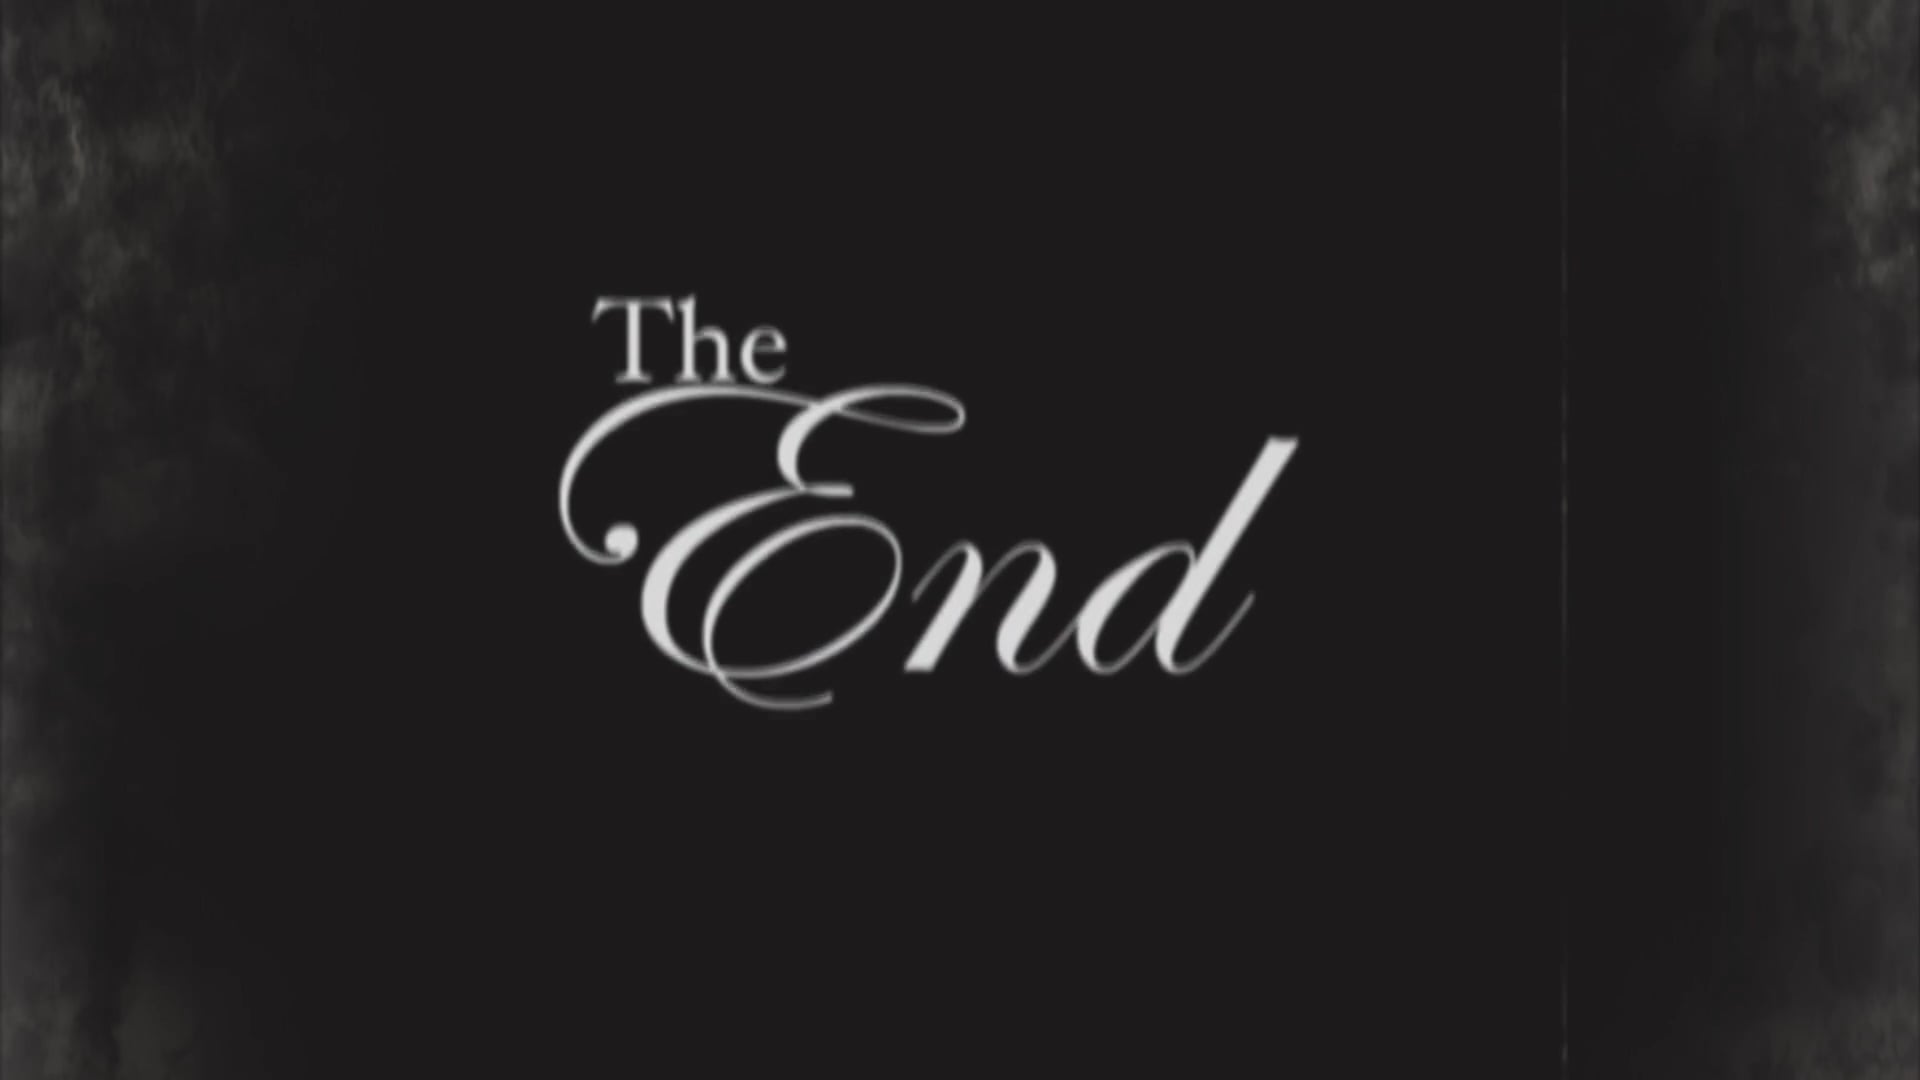 The end конец. The end надпись. Красивая надпись jhe end. The end картинка. Заставка the end.